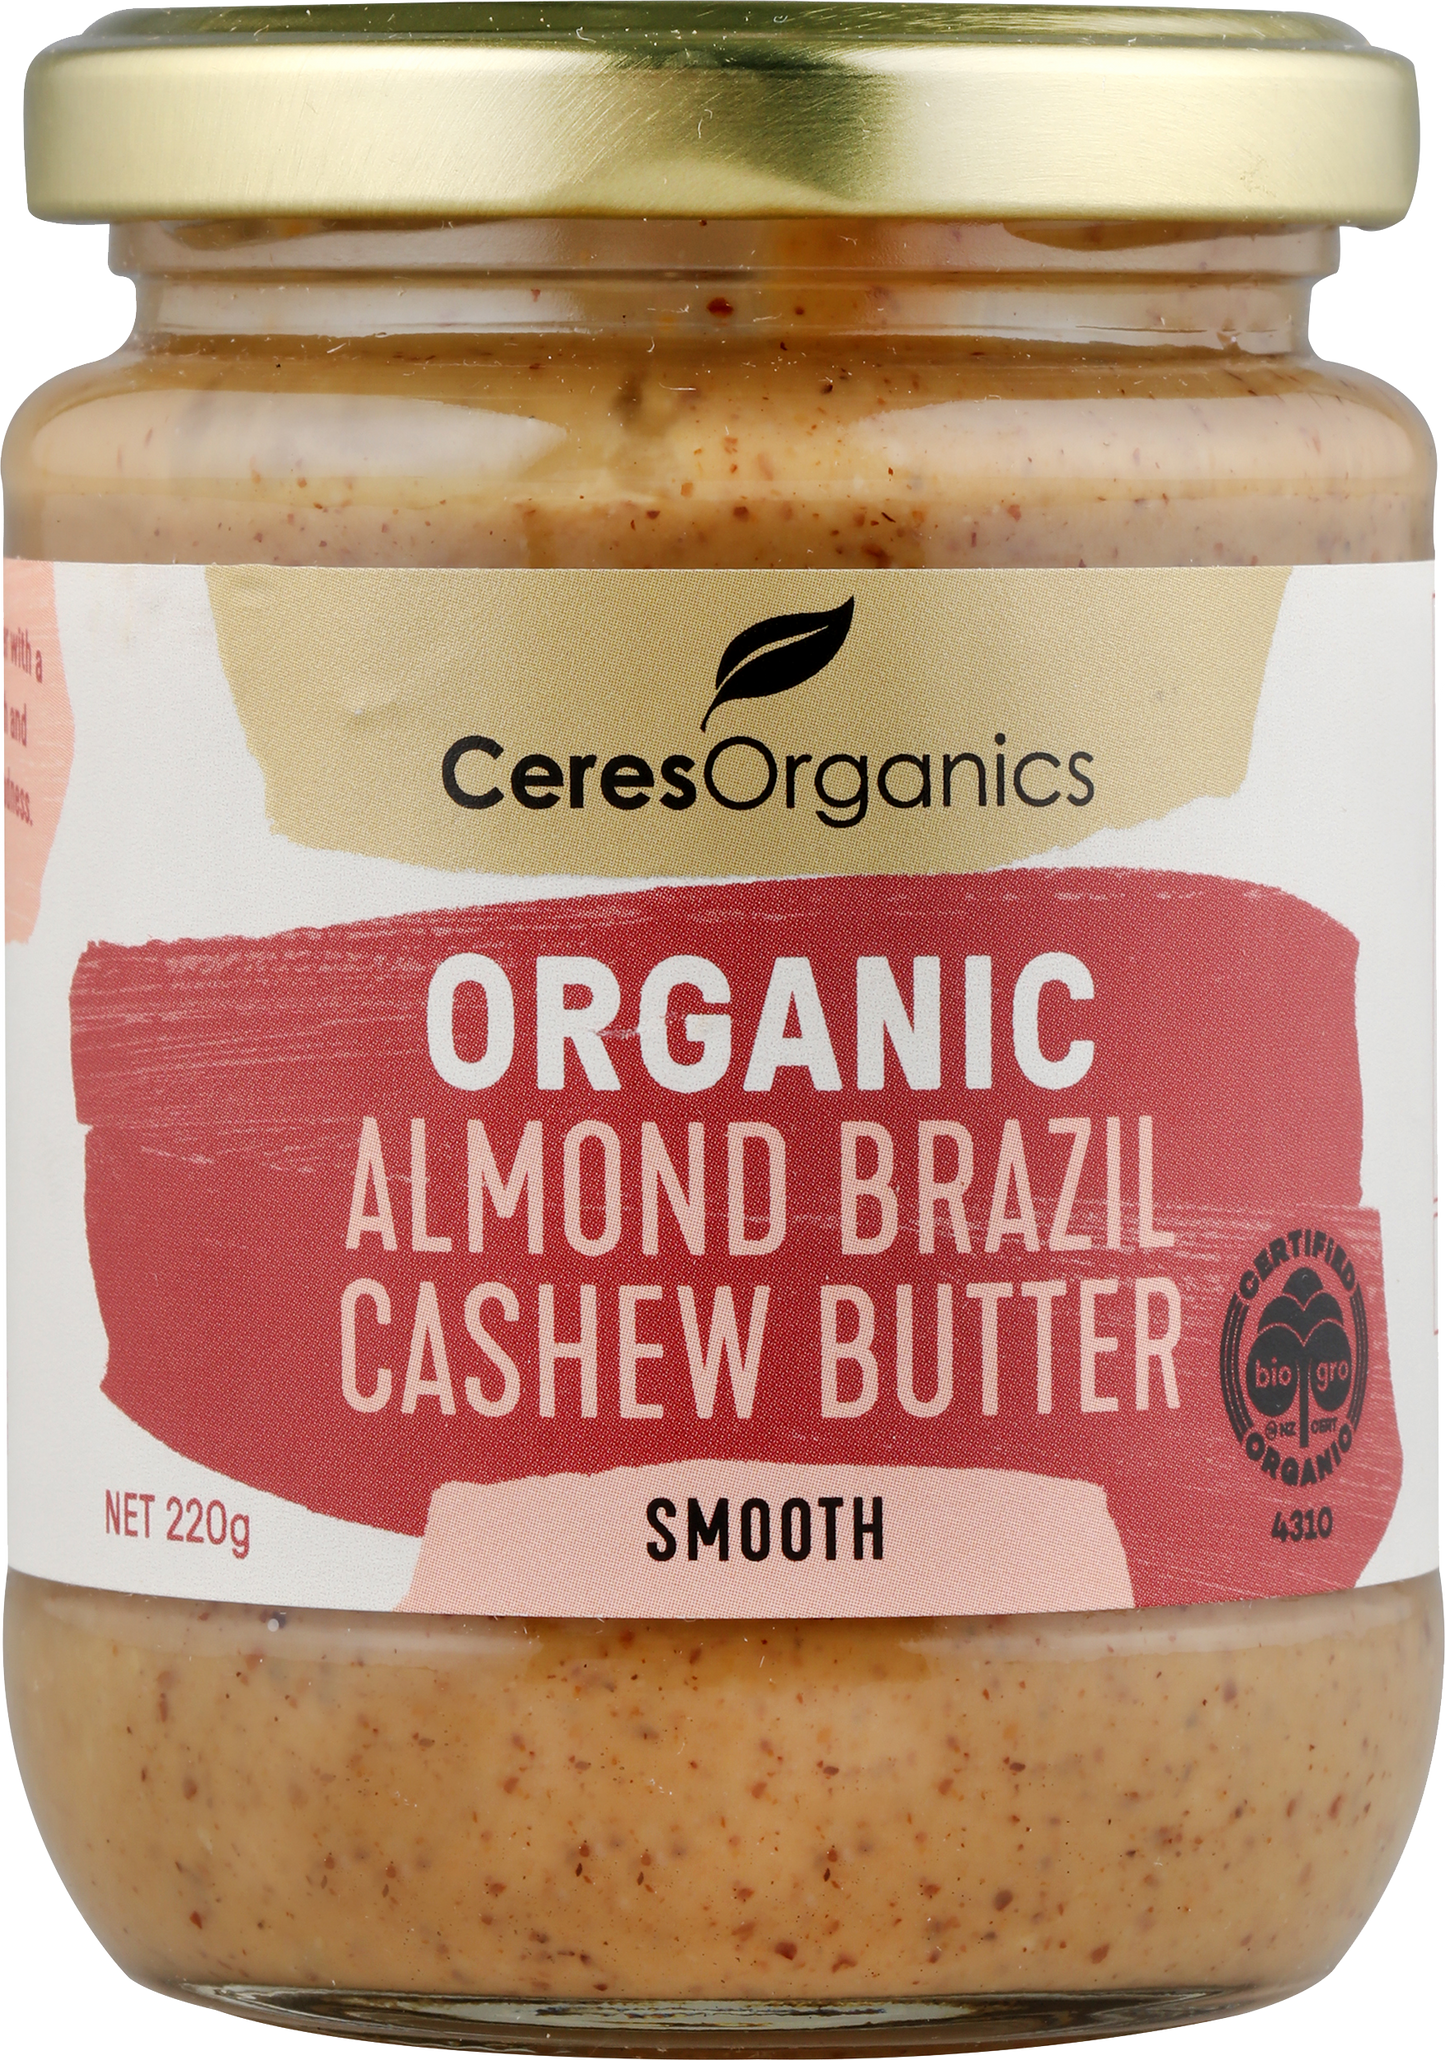 Organic Almond Brazil Cashew Butter, Smooth - 220g